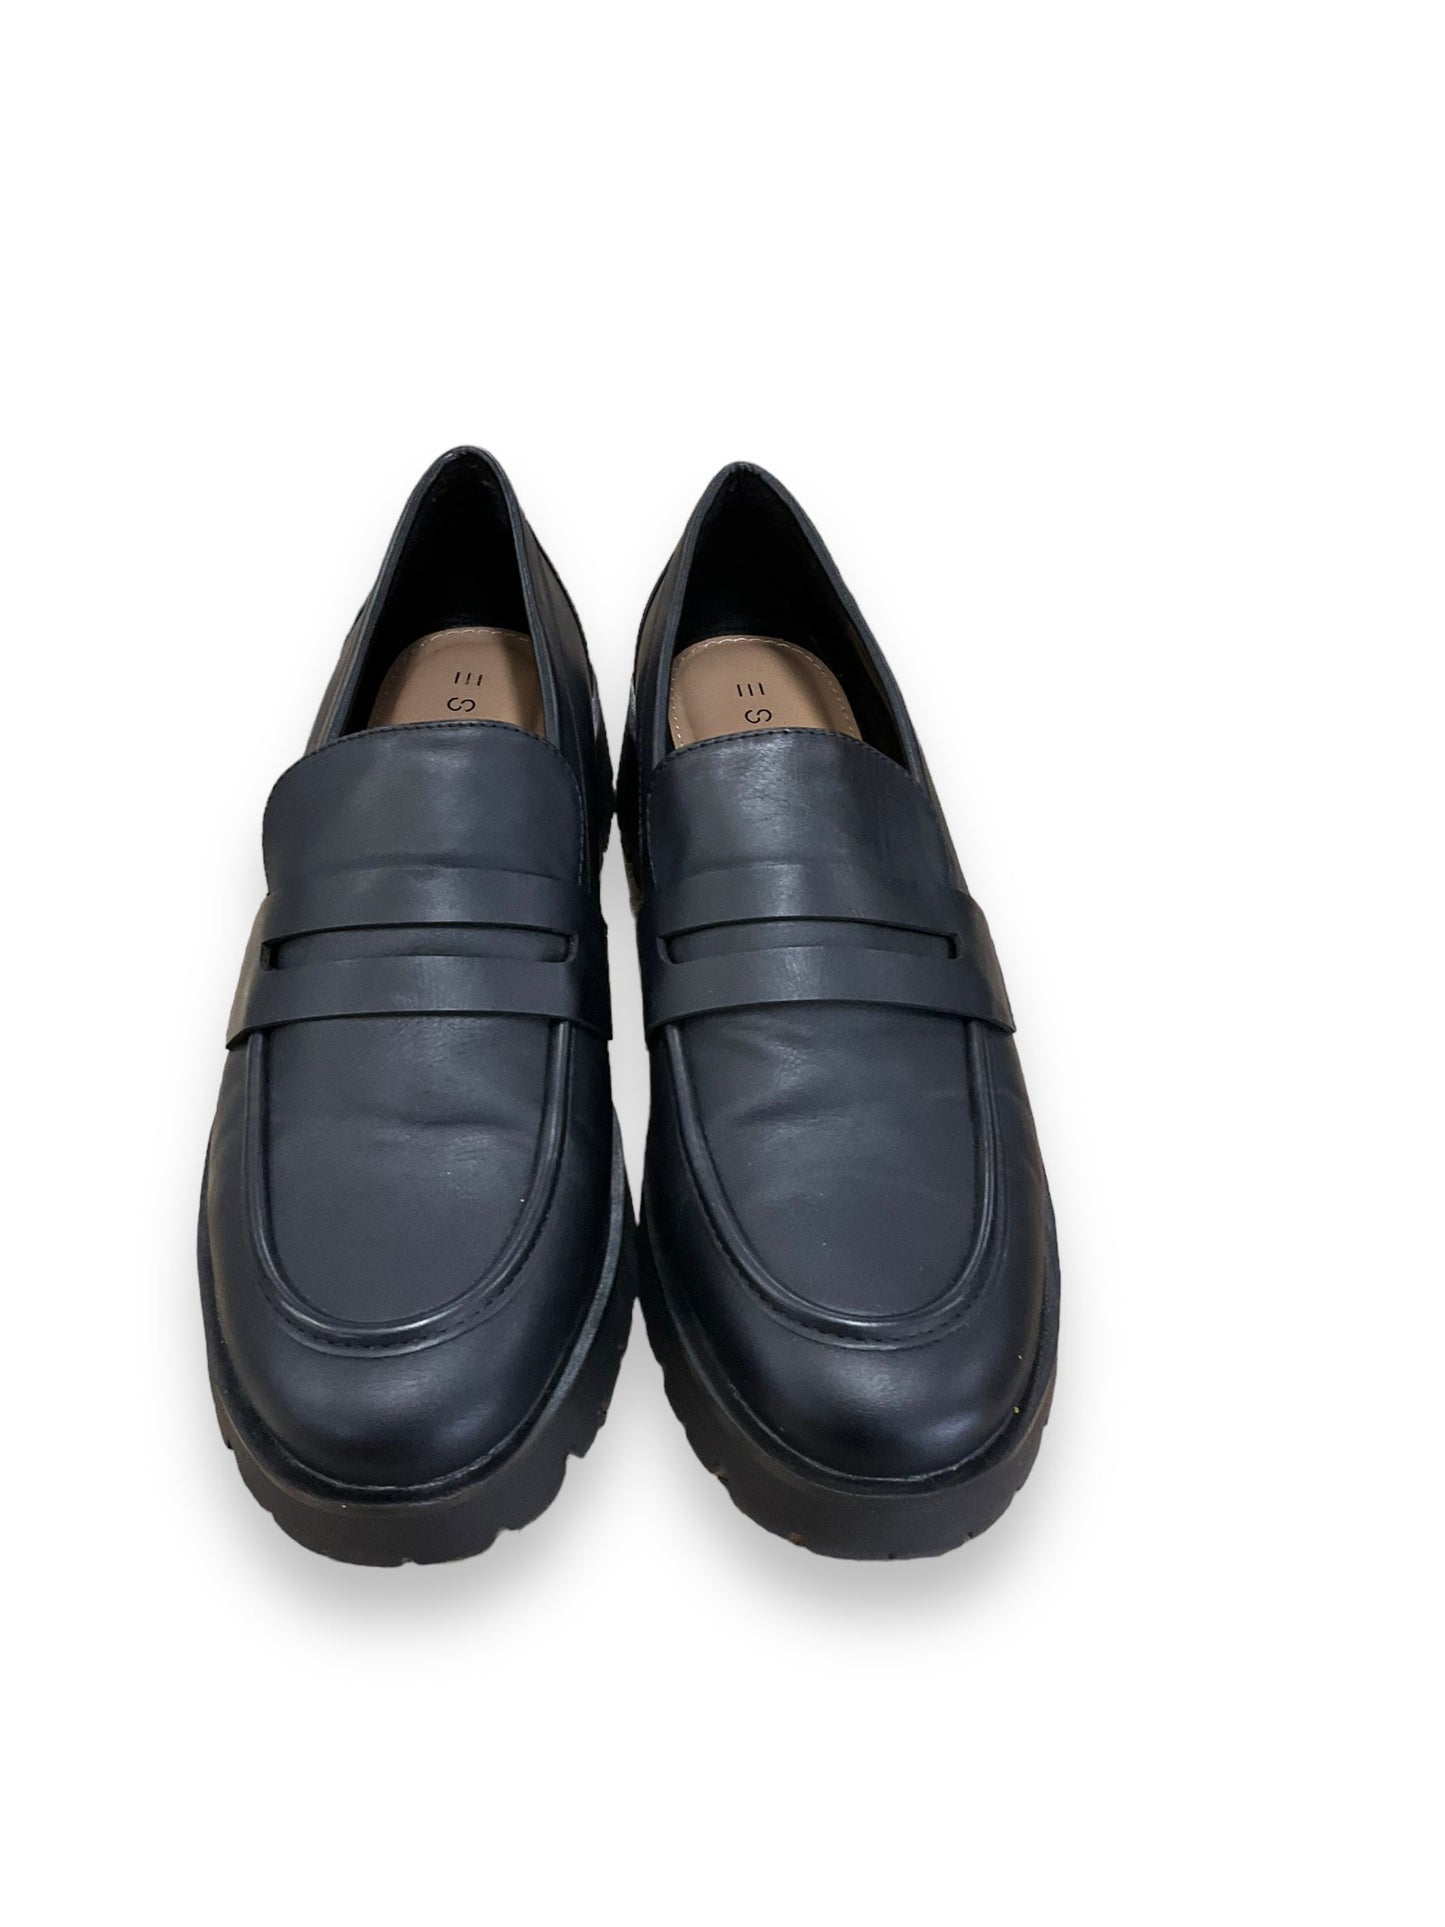 Shoes Flats By Esprit  Size: 9.5